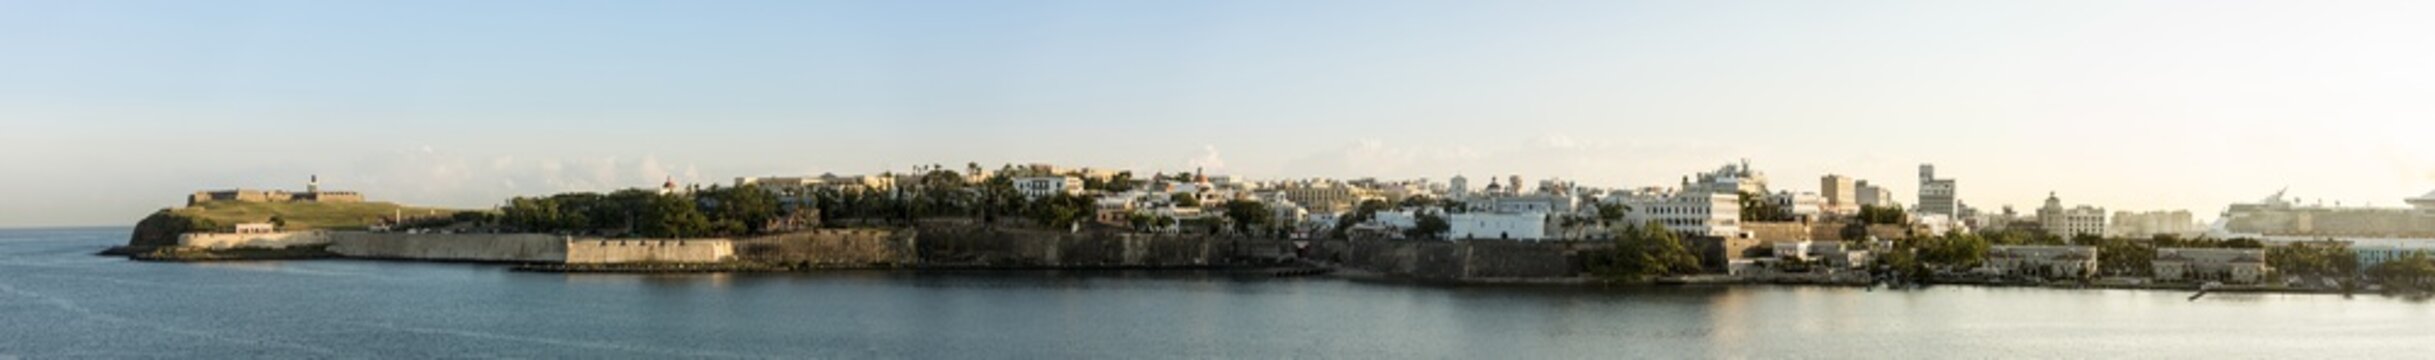 180 degree panorama of old San Juan, Puerto Rico and El Morro fortress at dawn.